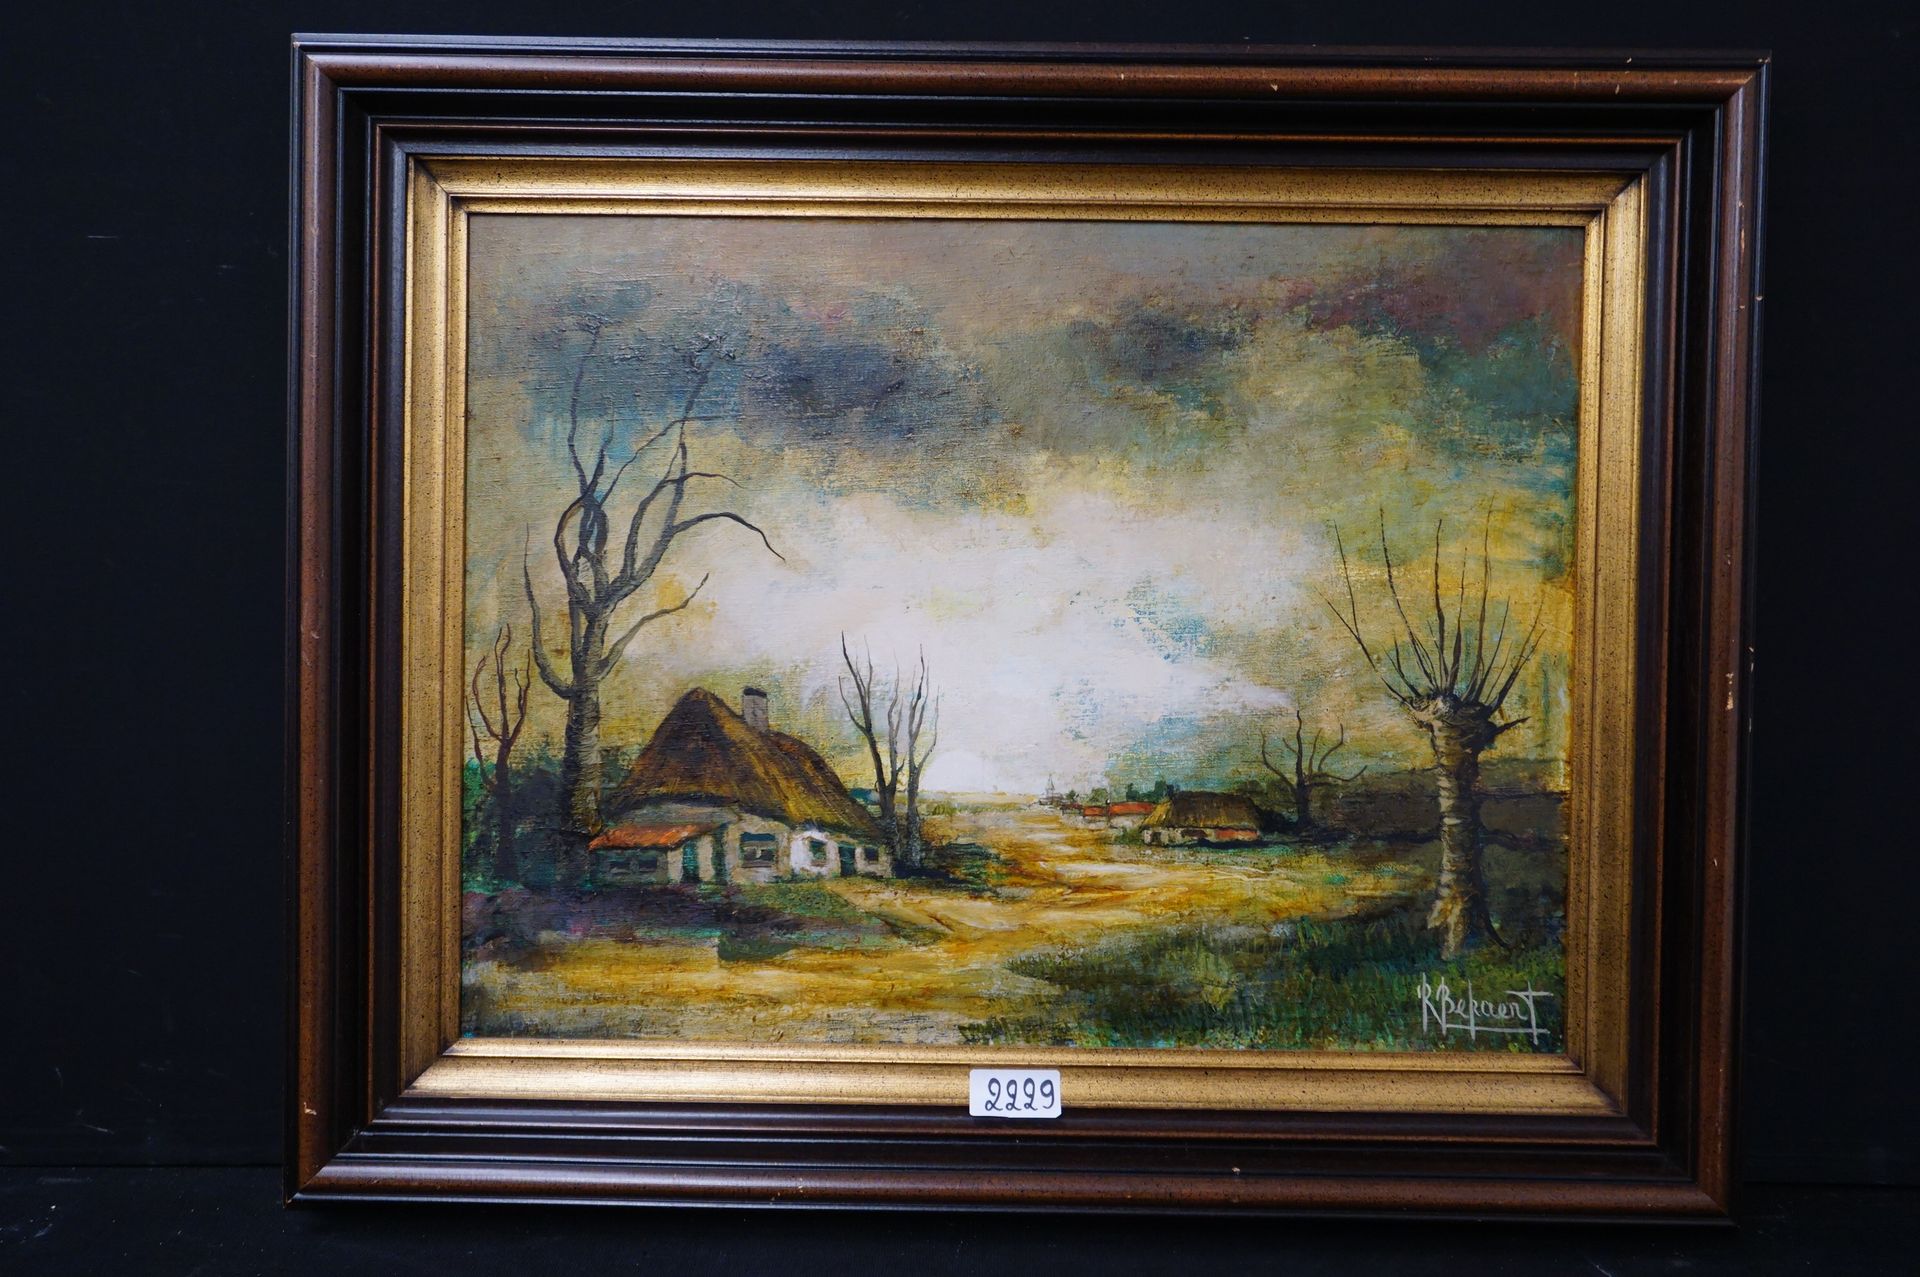 R. BEKAERT "Landscape with hooves" - Oil on canvas - Signed - 60 x 80 cm